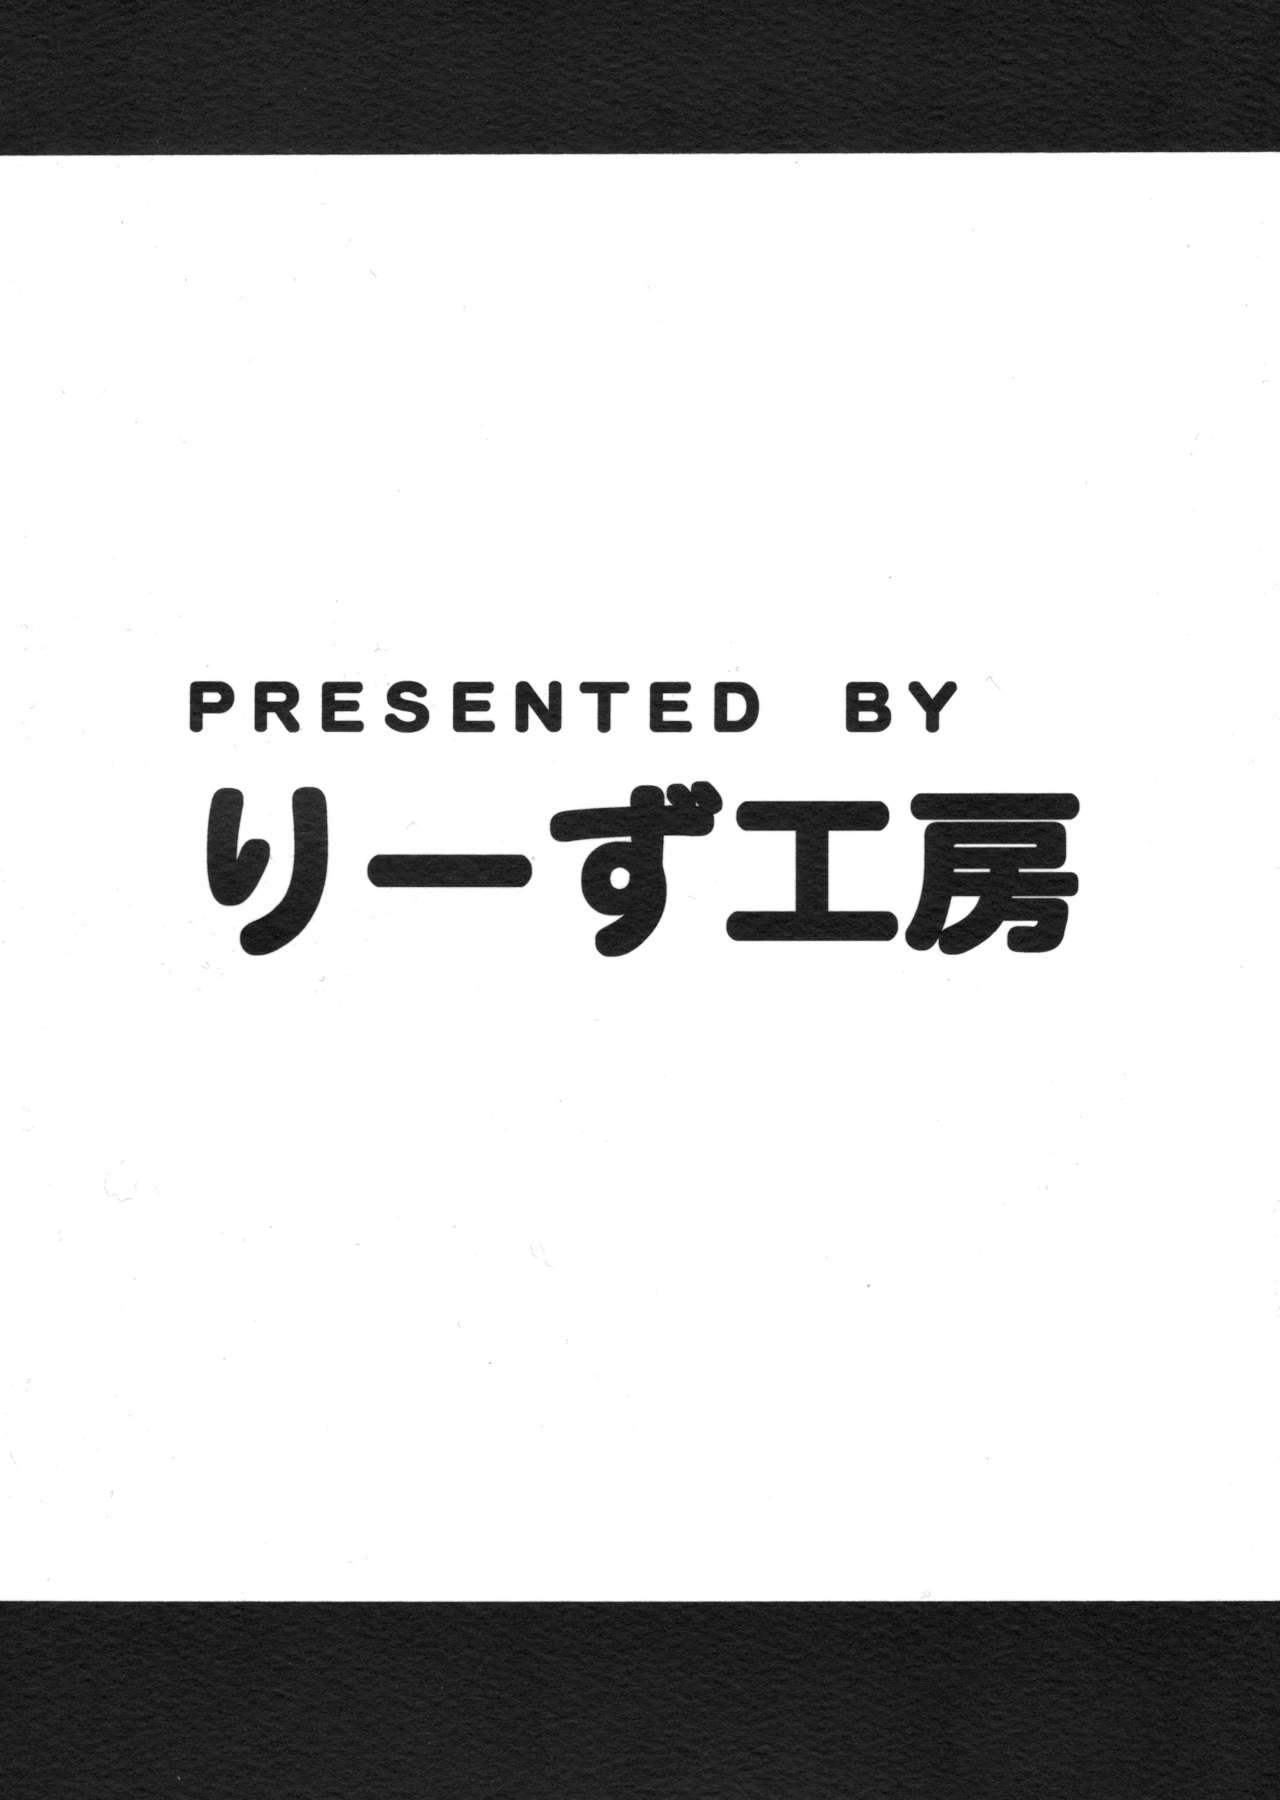 [Leaz Koubou (Oujano Kaze)] Hatsujou TWINKIE STAR (Go! Princess PreCure) [りーず工房 (王者之風)] 発情TWINKIE STAR★ (GO！プリンセスプリキュア)